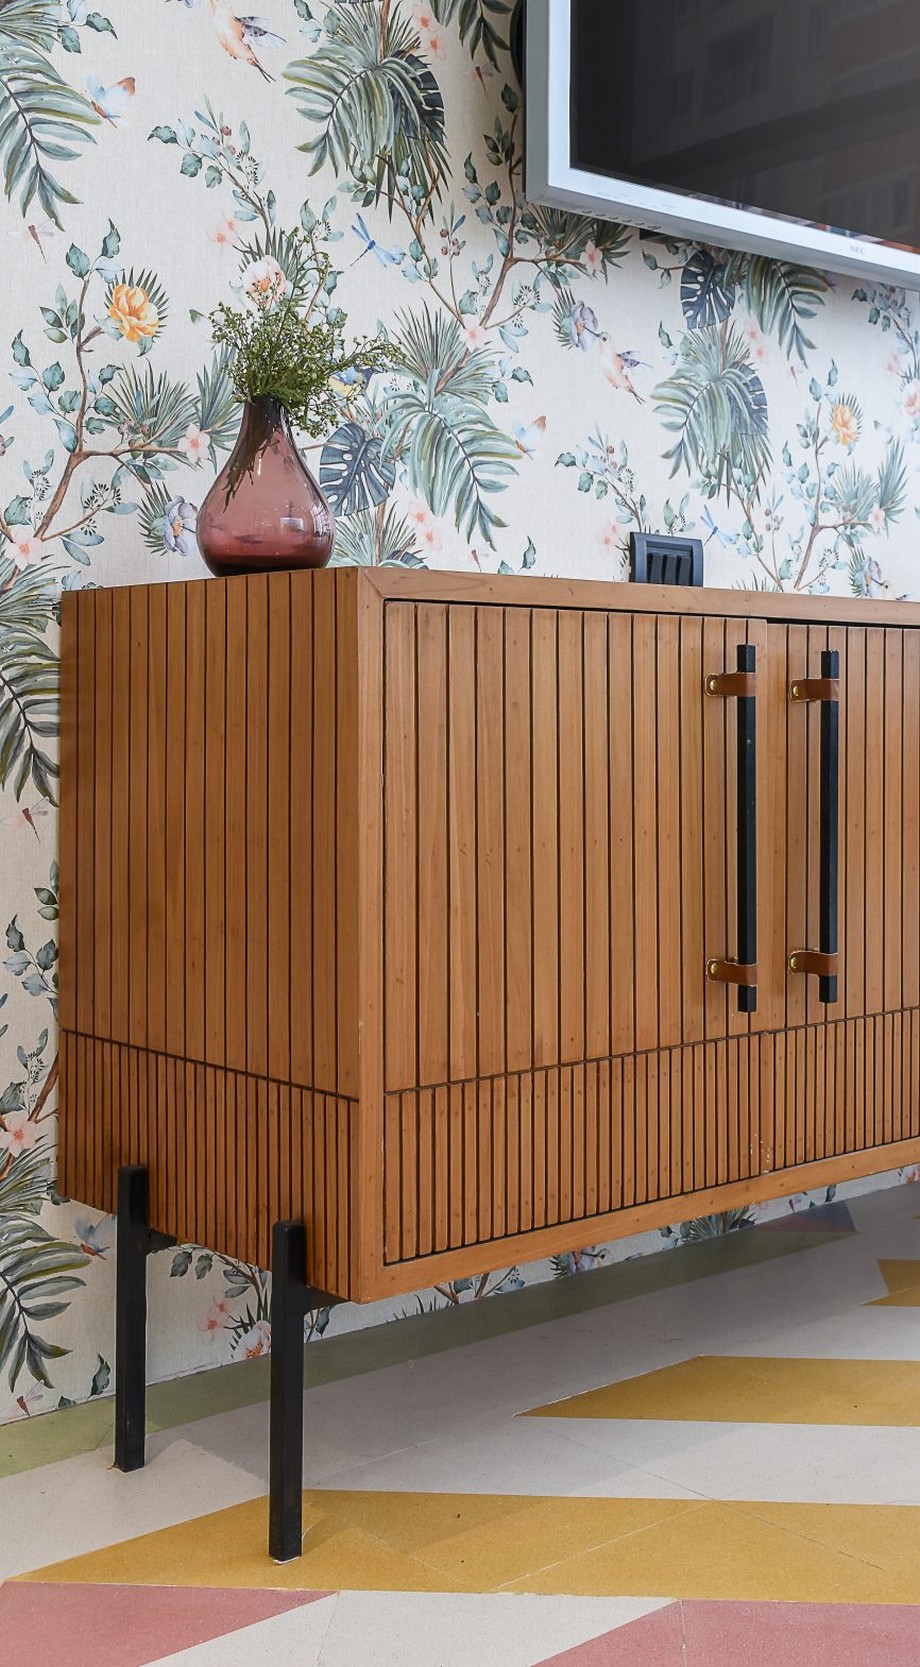 Thiên đường sọc màu kẹo nổi bật trong mẫu thiết kế nội thất văn phòng đương đại Line Office > Thiết kế văn phòng đương đại bằng việc sử dụng vật liệu gỗ tự nhiên